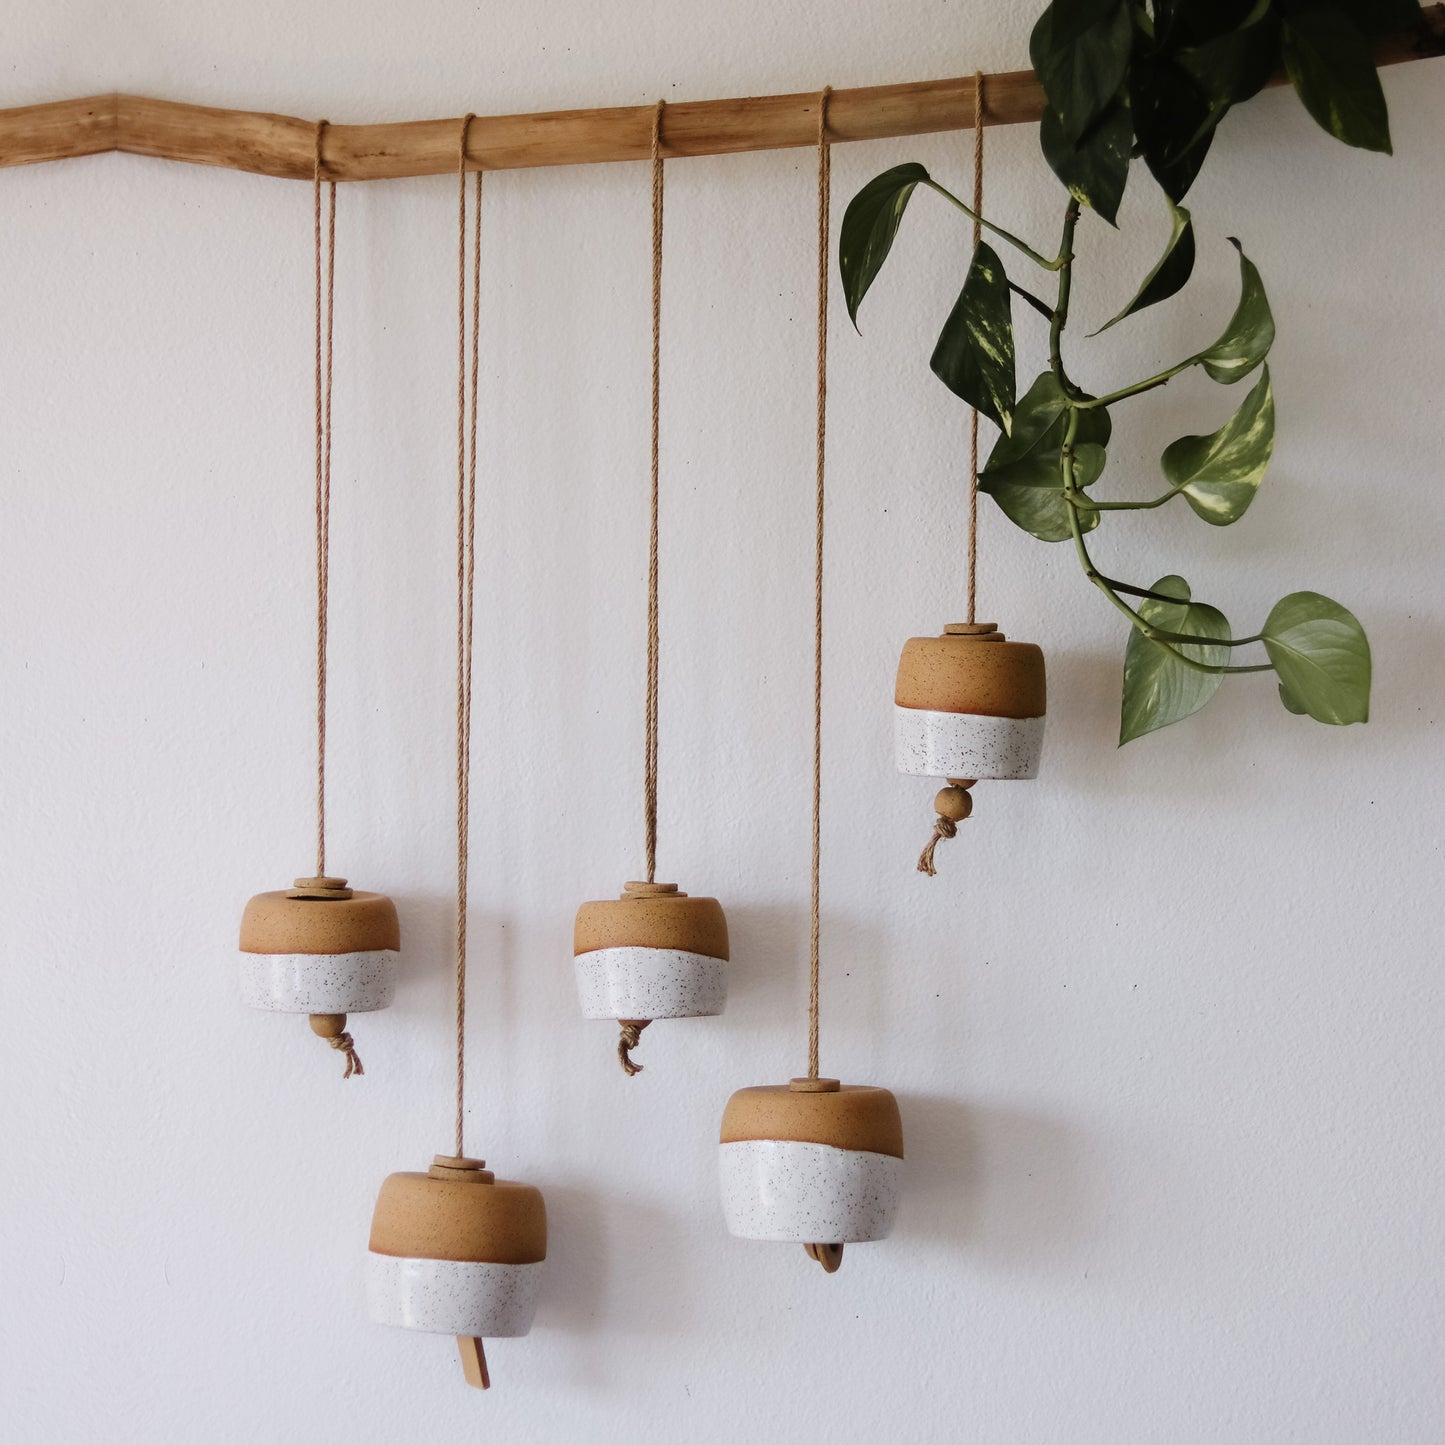 Hanging Bells - Ceramic